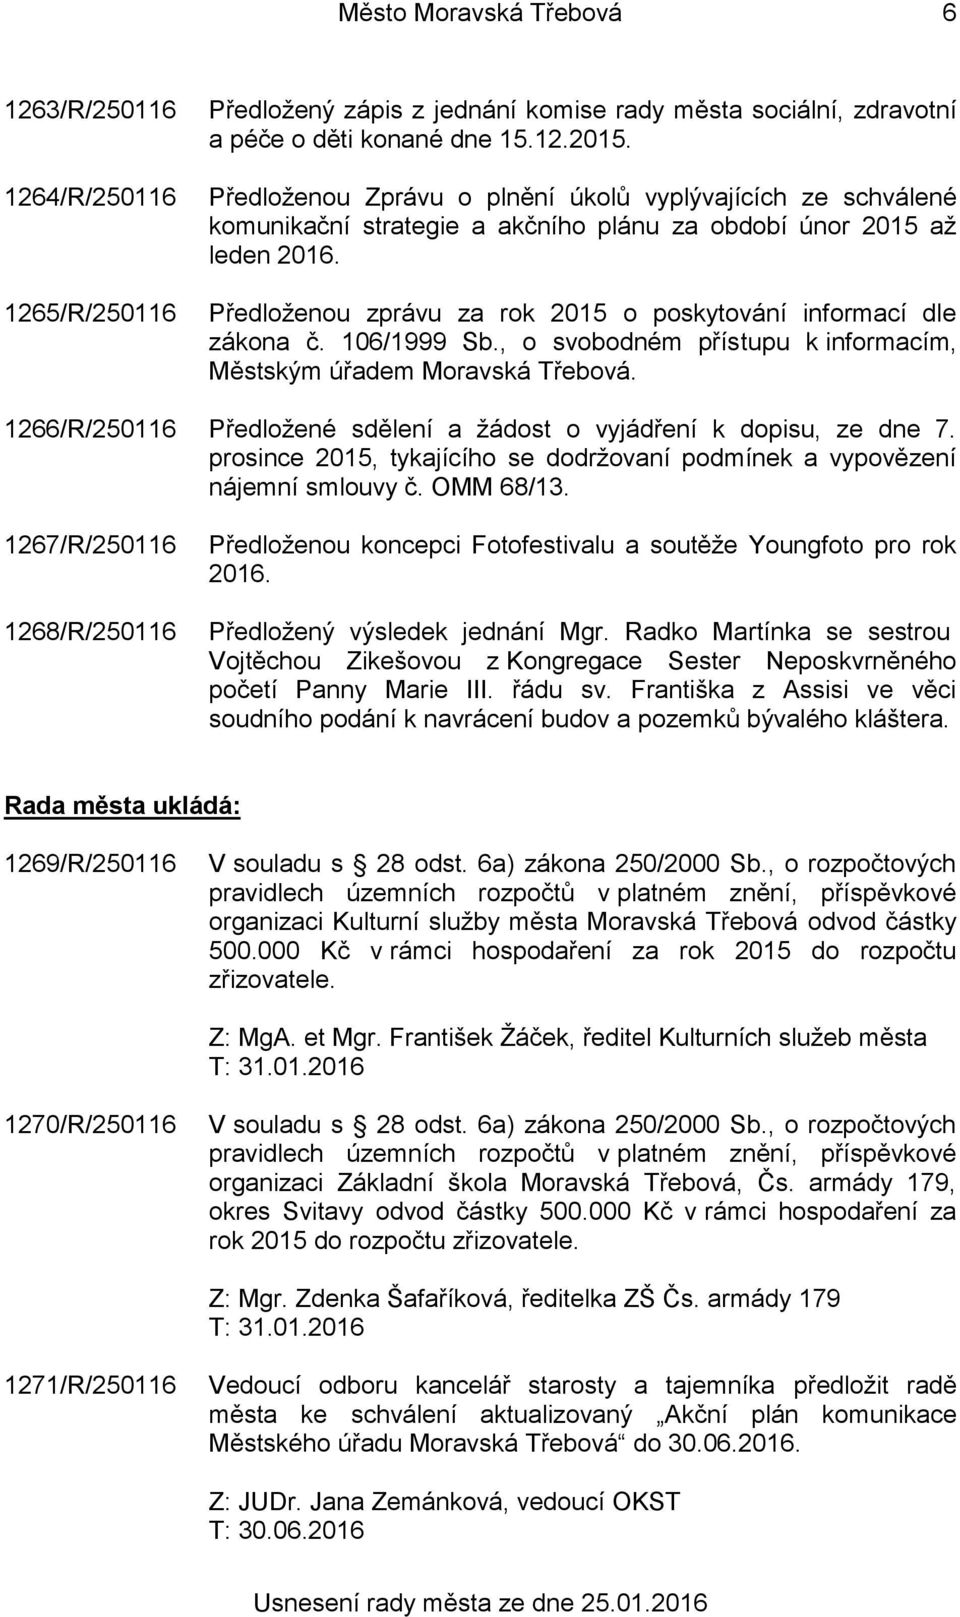 Předloženou zprávu za rok 2015 o poskytování informací dle zákona č. 106/1999 Sb., o svobodném přístupu k informacím, Městským úřadem Moravská Třebová.